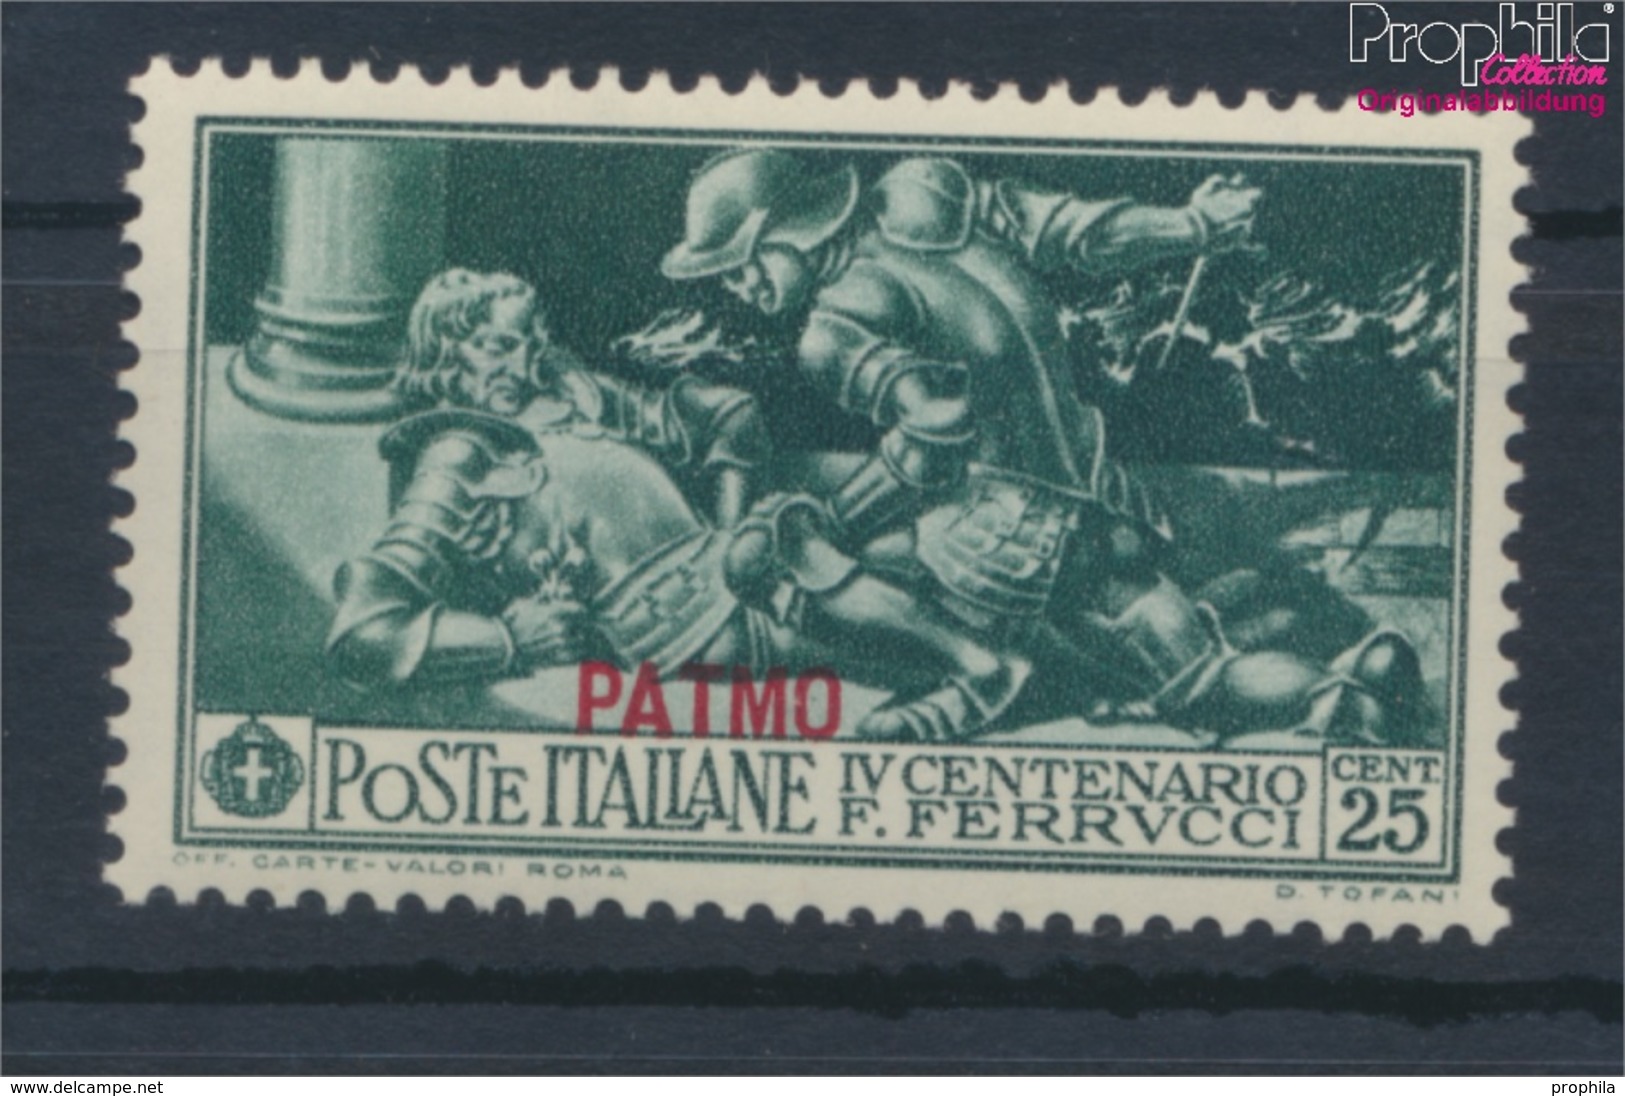 Ägäische Inseln 27VIII Postfrisch 1930 Ferrucci Aufdruckausgabe Patmo (9465480 - Egeo (Patmo)